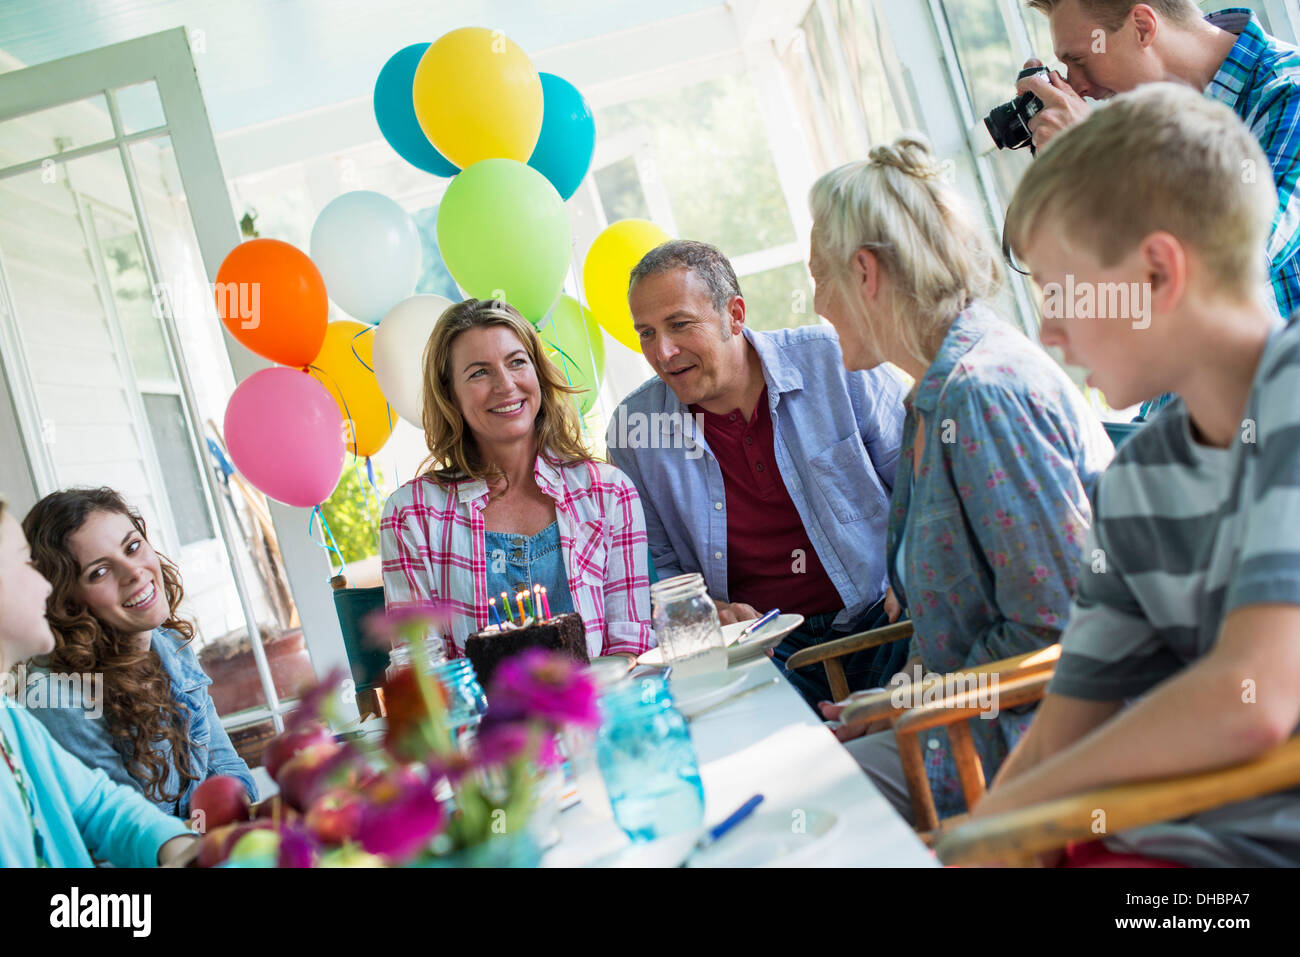 Eine Geburtstagsfeier in einer Landhausküche. Eine Gruppe von Erwachsenen und Kinder versammelten sich um einen Schokoladenkuchen. Stockfoto